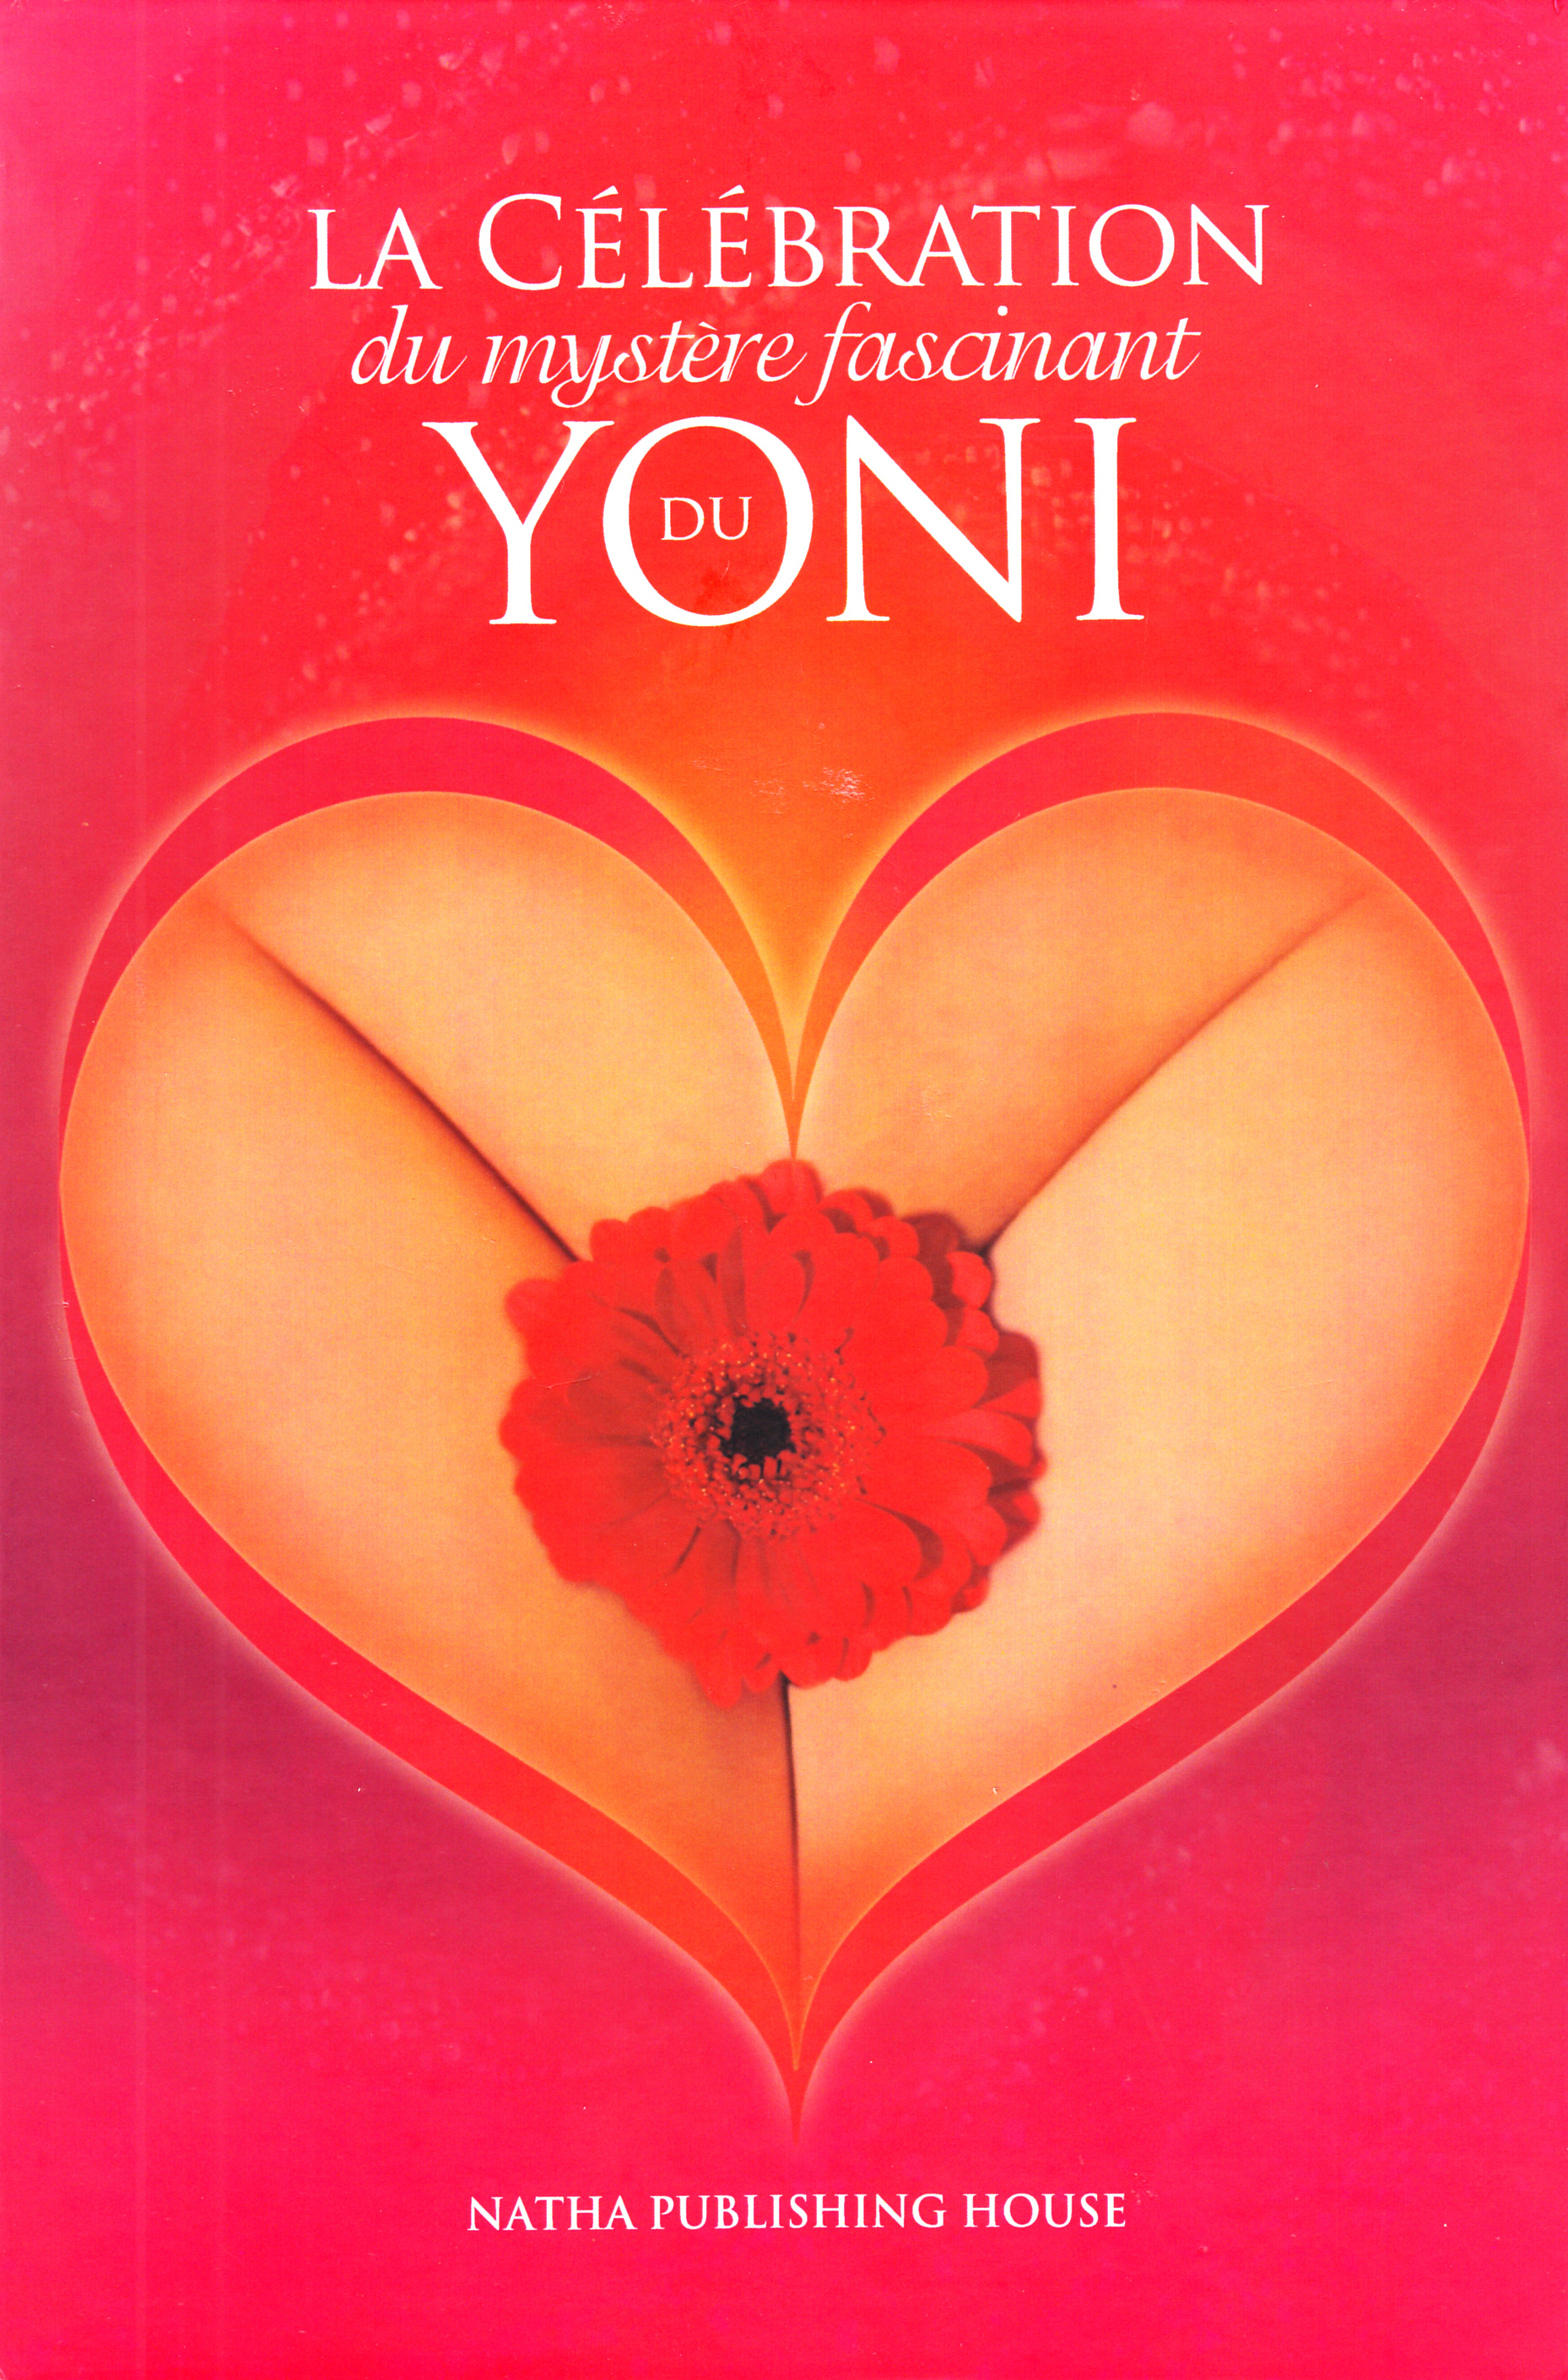 La celebration du mystere fascinant du Yoni + CD - Yoni Puja